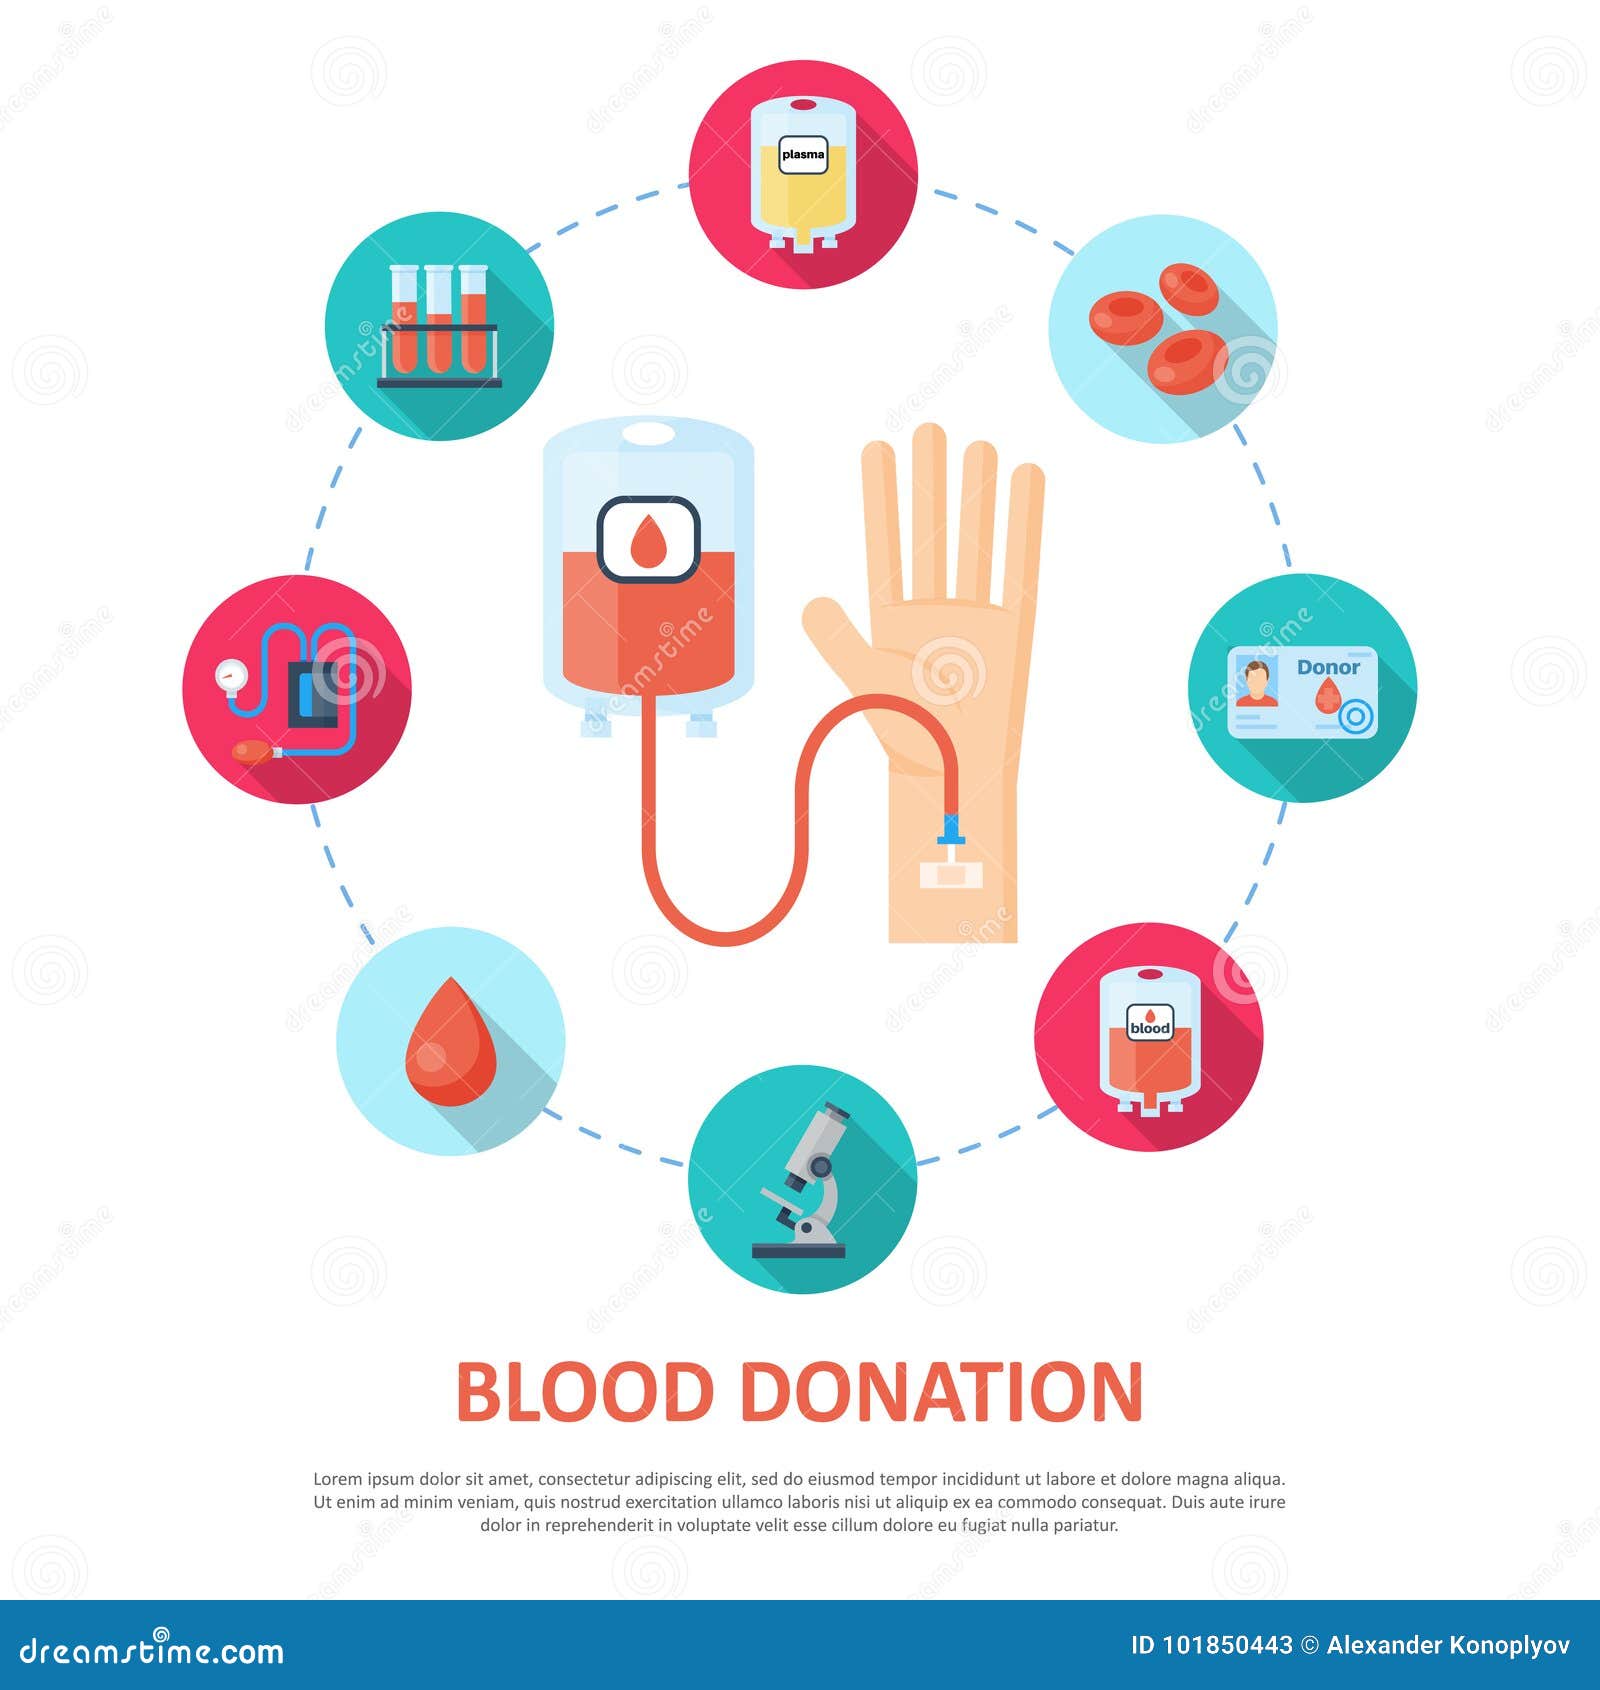 Донорство антибиотики. Рисунок на тему донорство крови. Донорство крови антибиотики. Инсульт и донорство крови. Миопия и донорство крови.